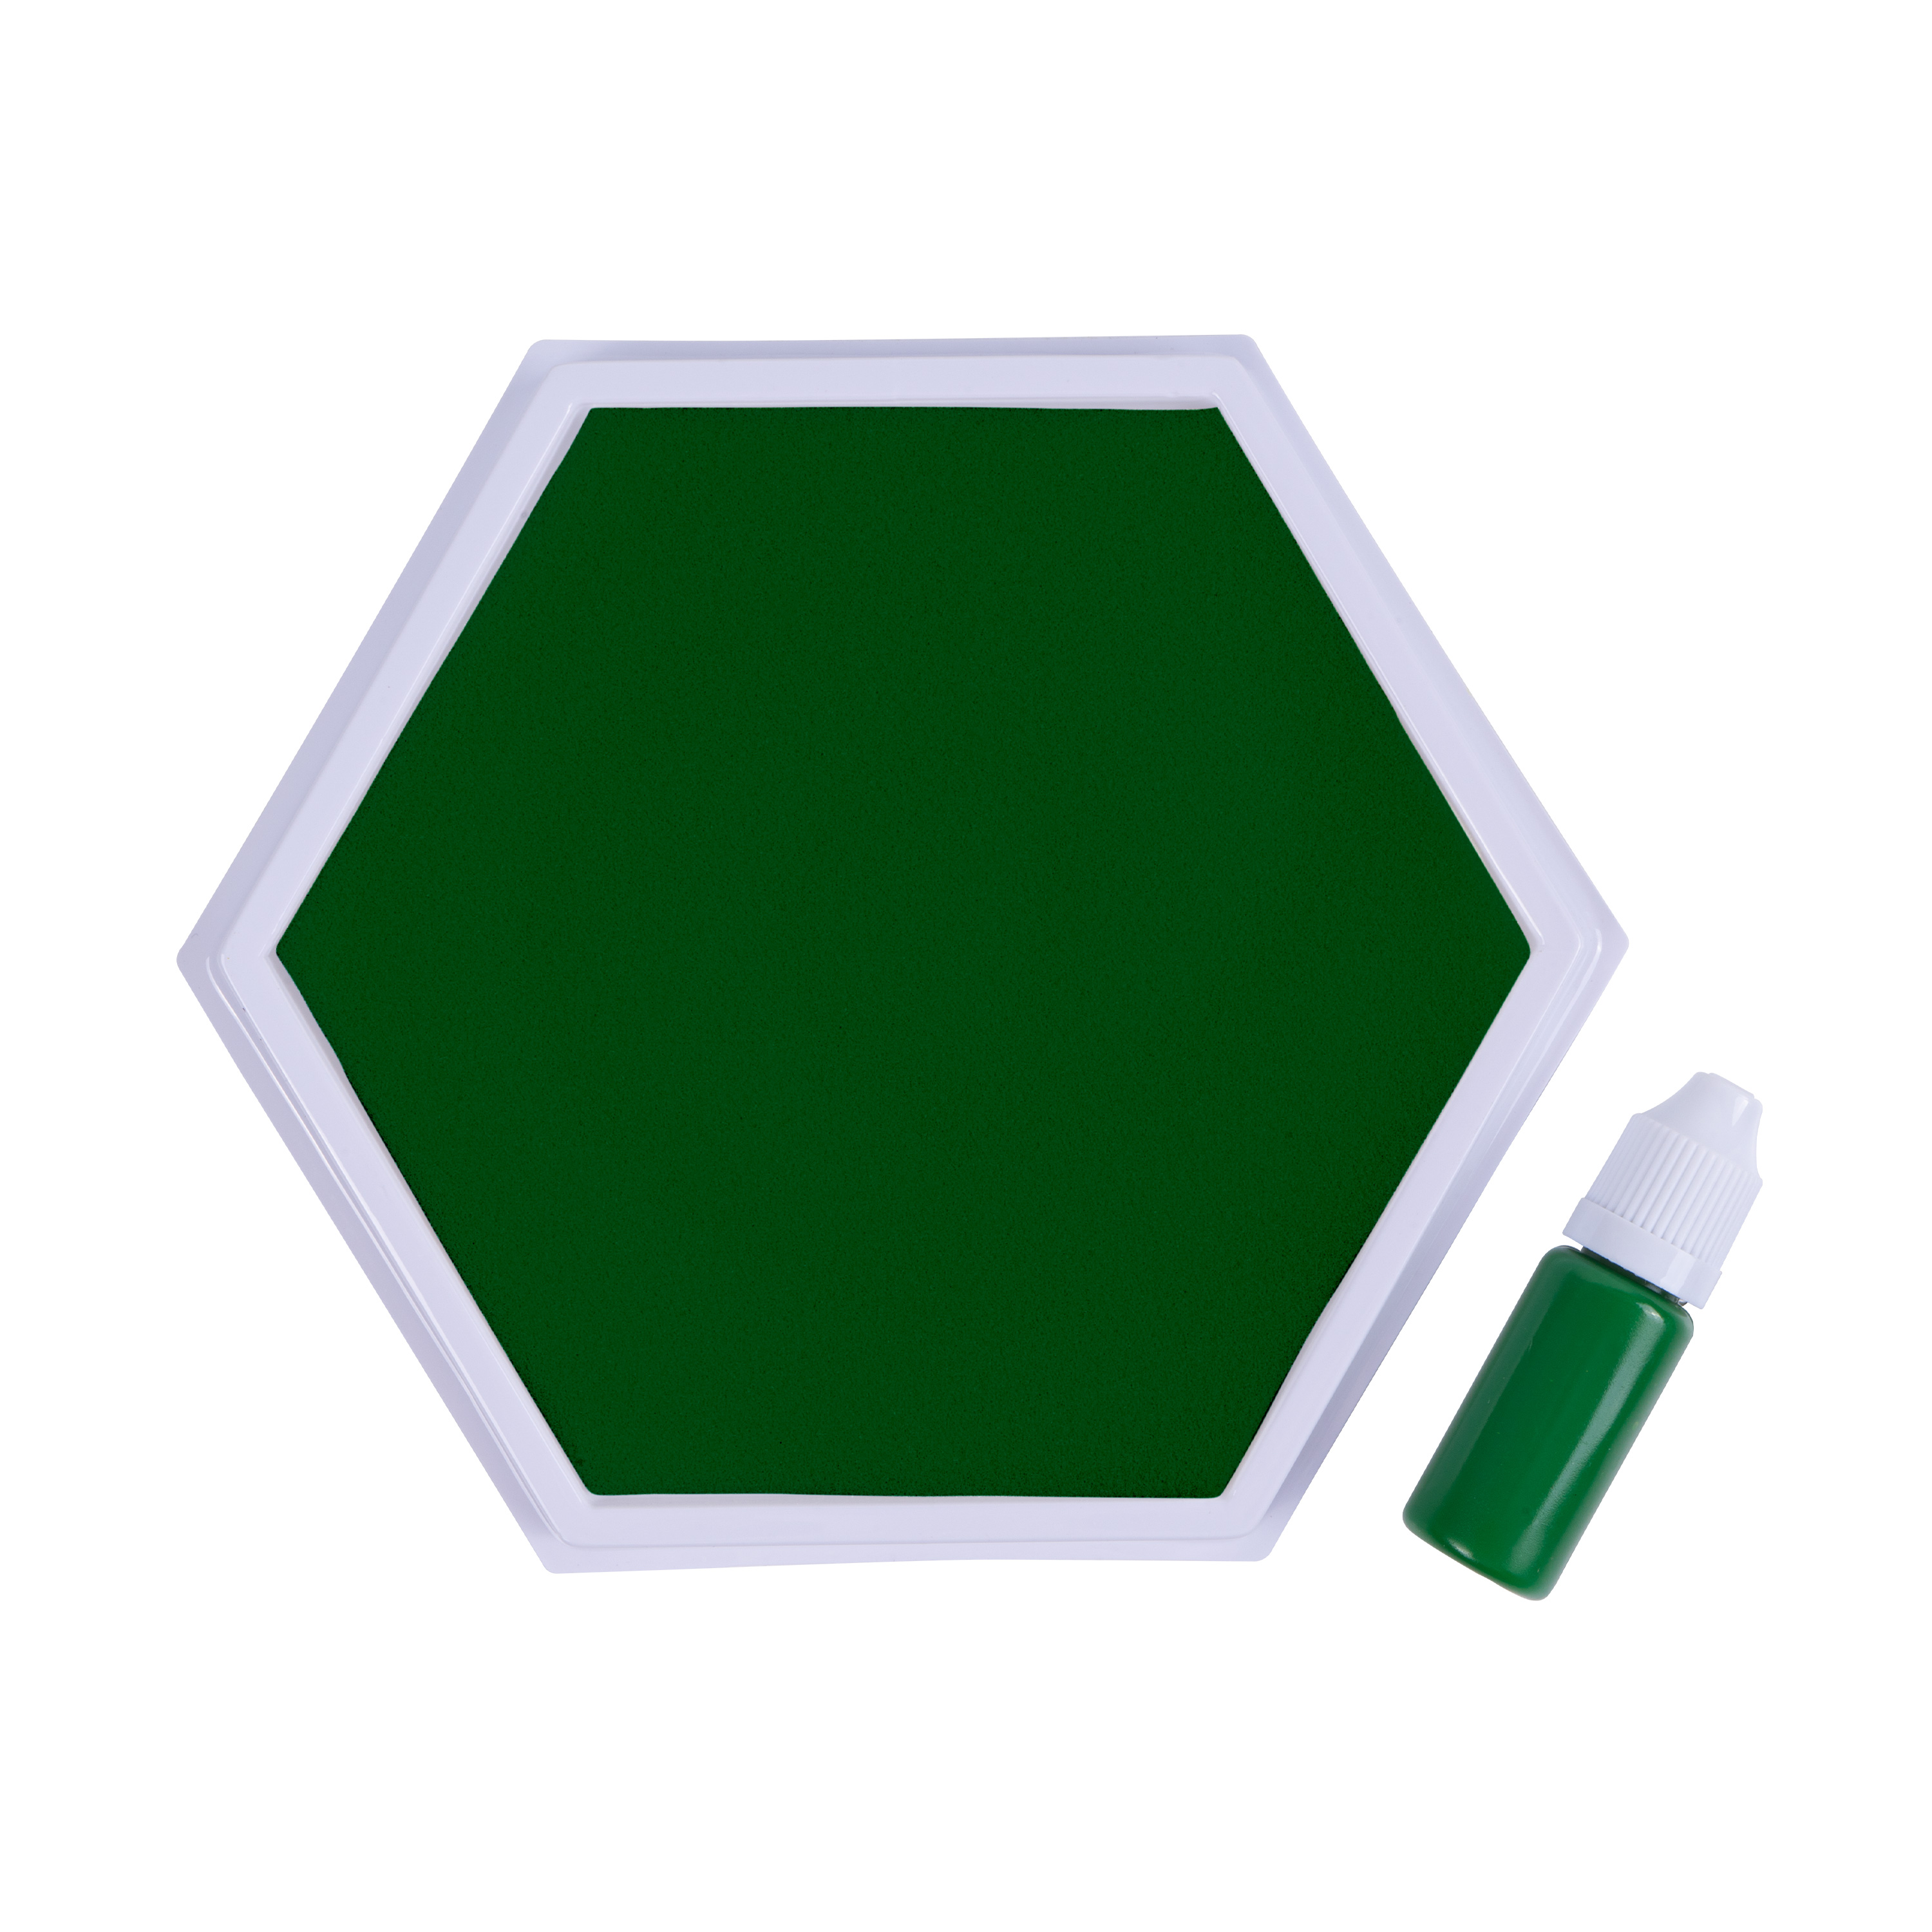 KuKiMa Mega-Stempelkissen, grün, Ø 16 cm